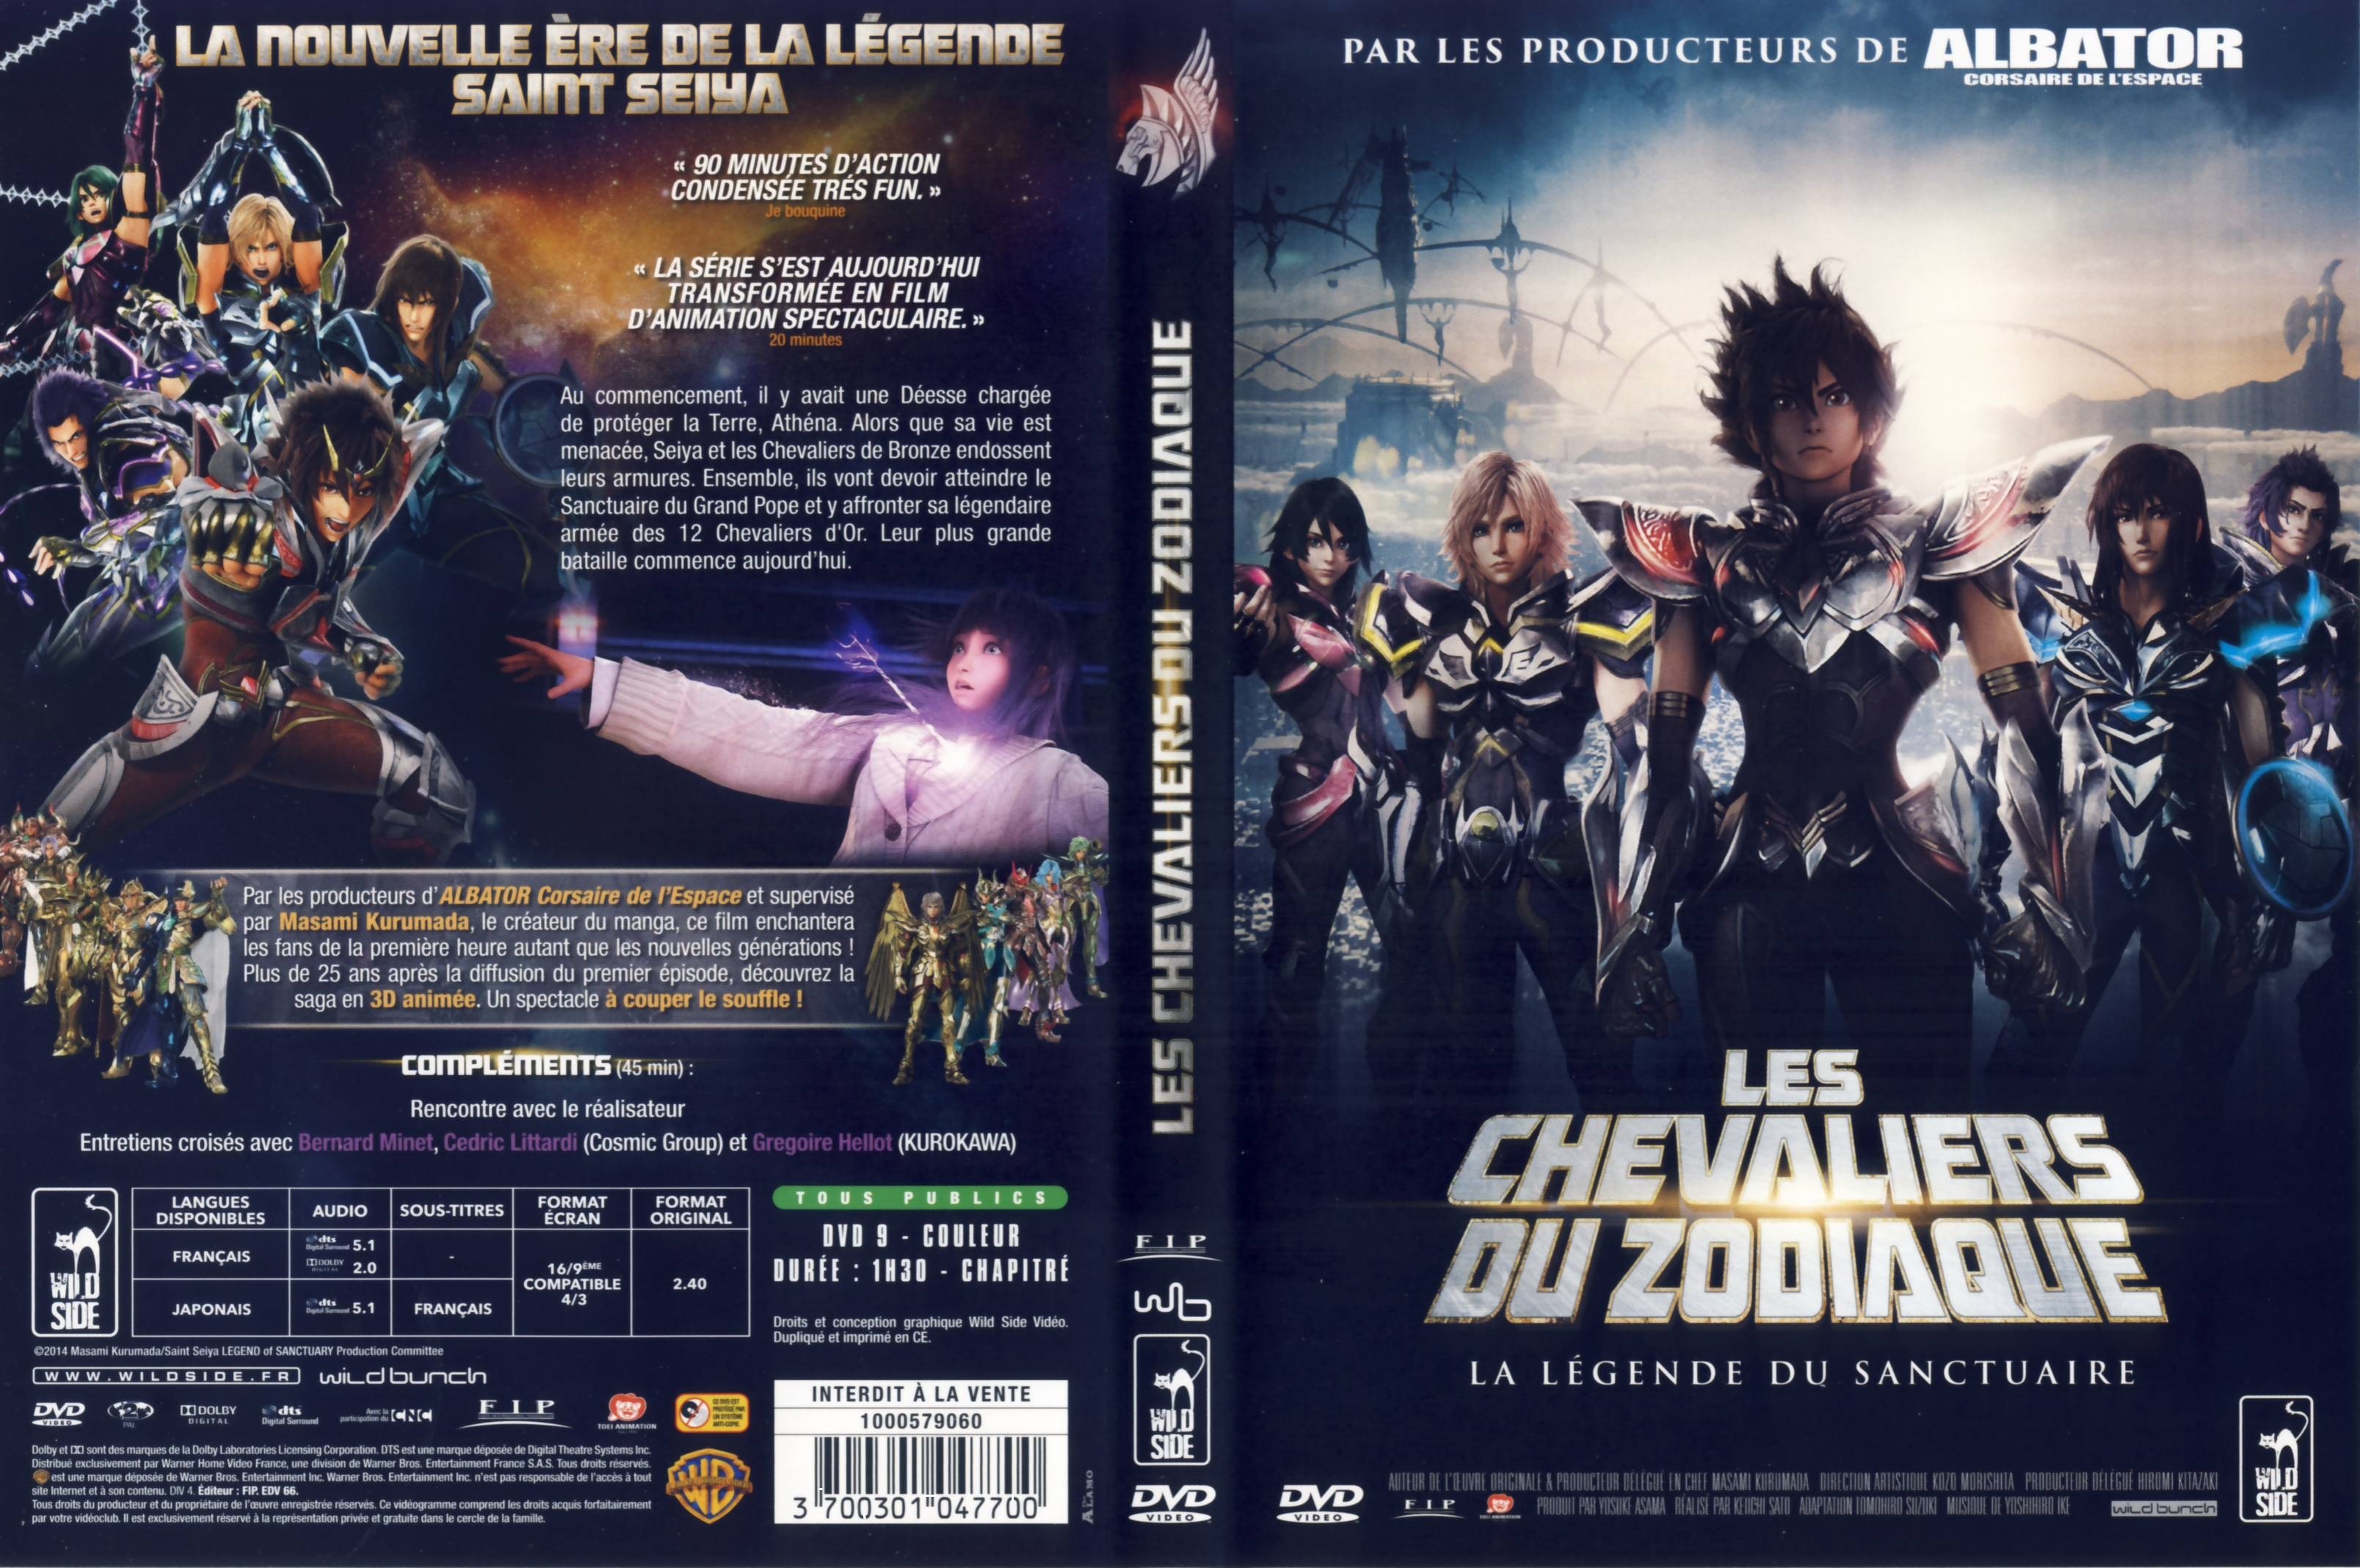 Jaquette DVD Les Chevaliers du Zodiaque (2014)